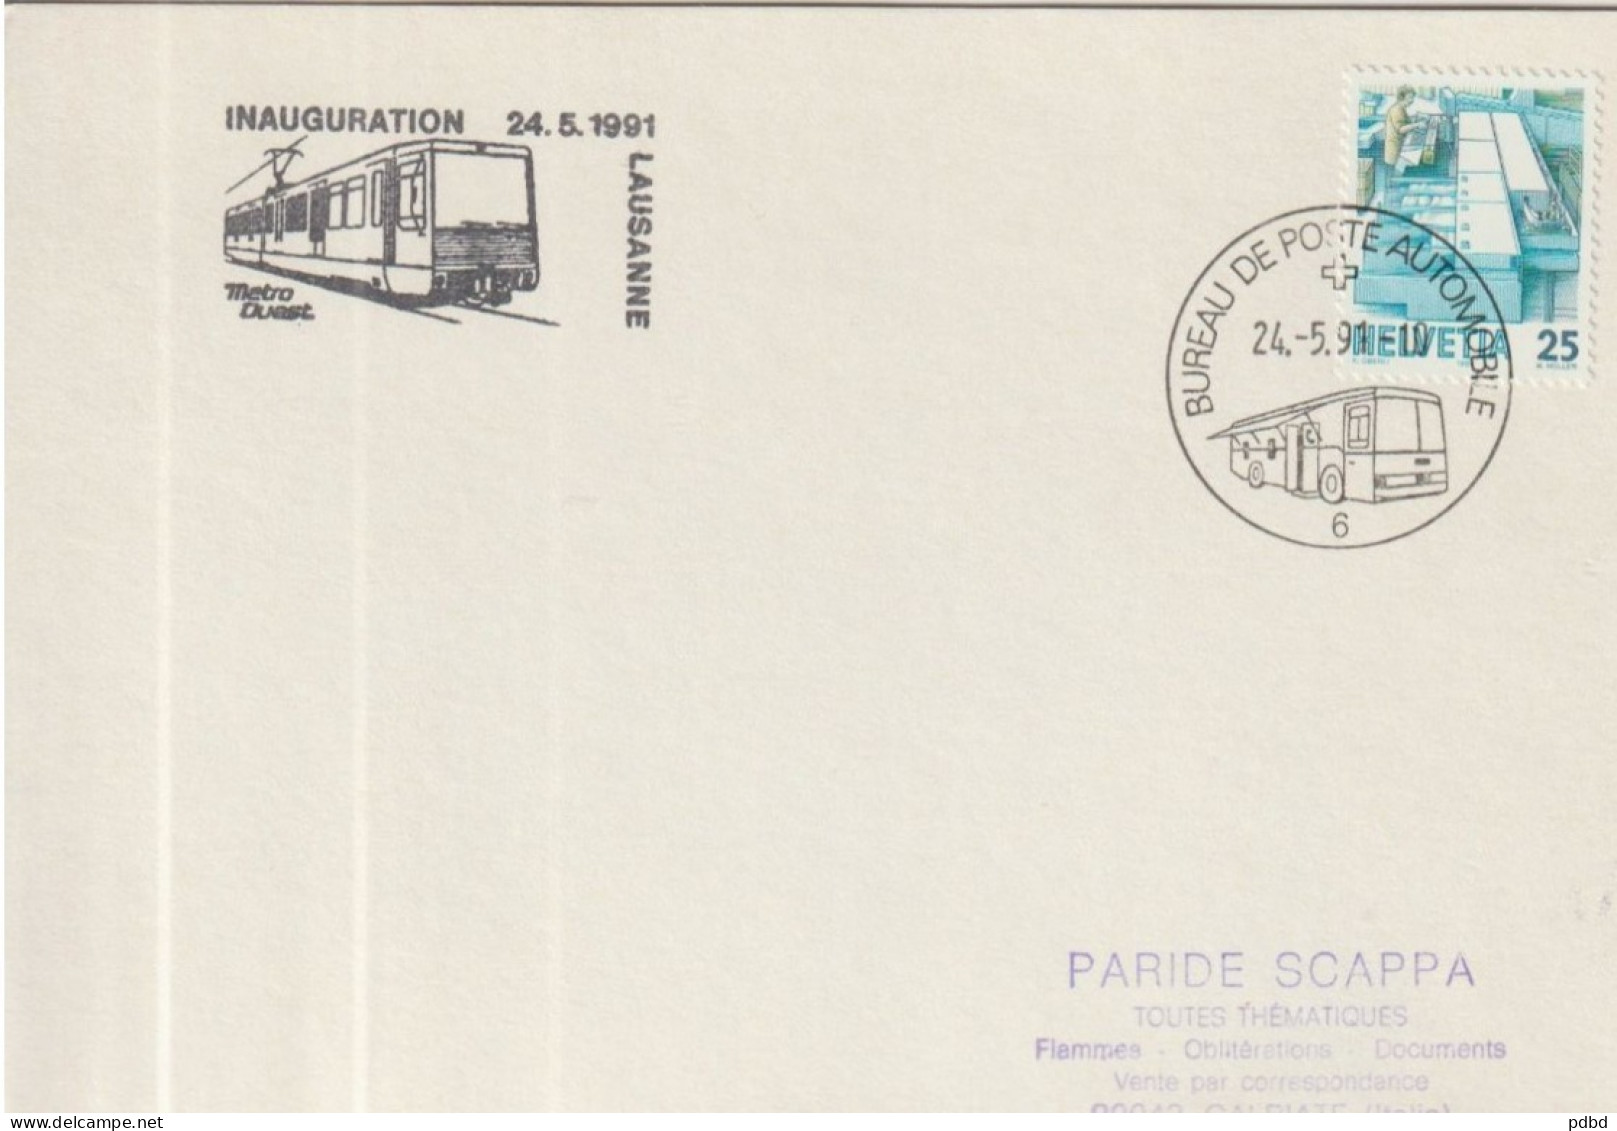 ETR FER 07 . Carton Format Enveloppe  . Suisse . Bureau De Poste Automobile 6 . Cachet Inauguration Métro 1991 .Lausanne - Ferrocarril